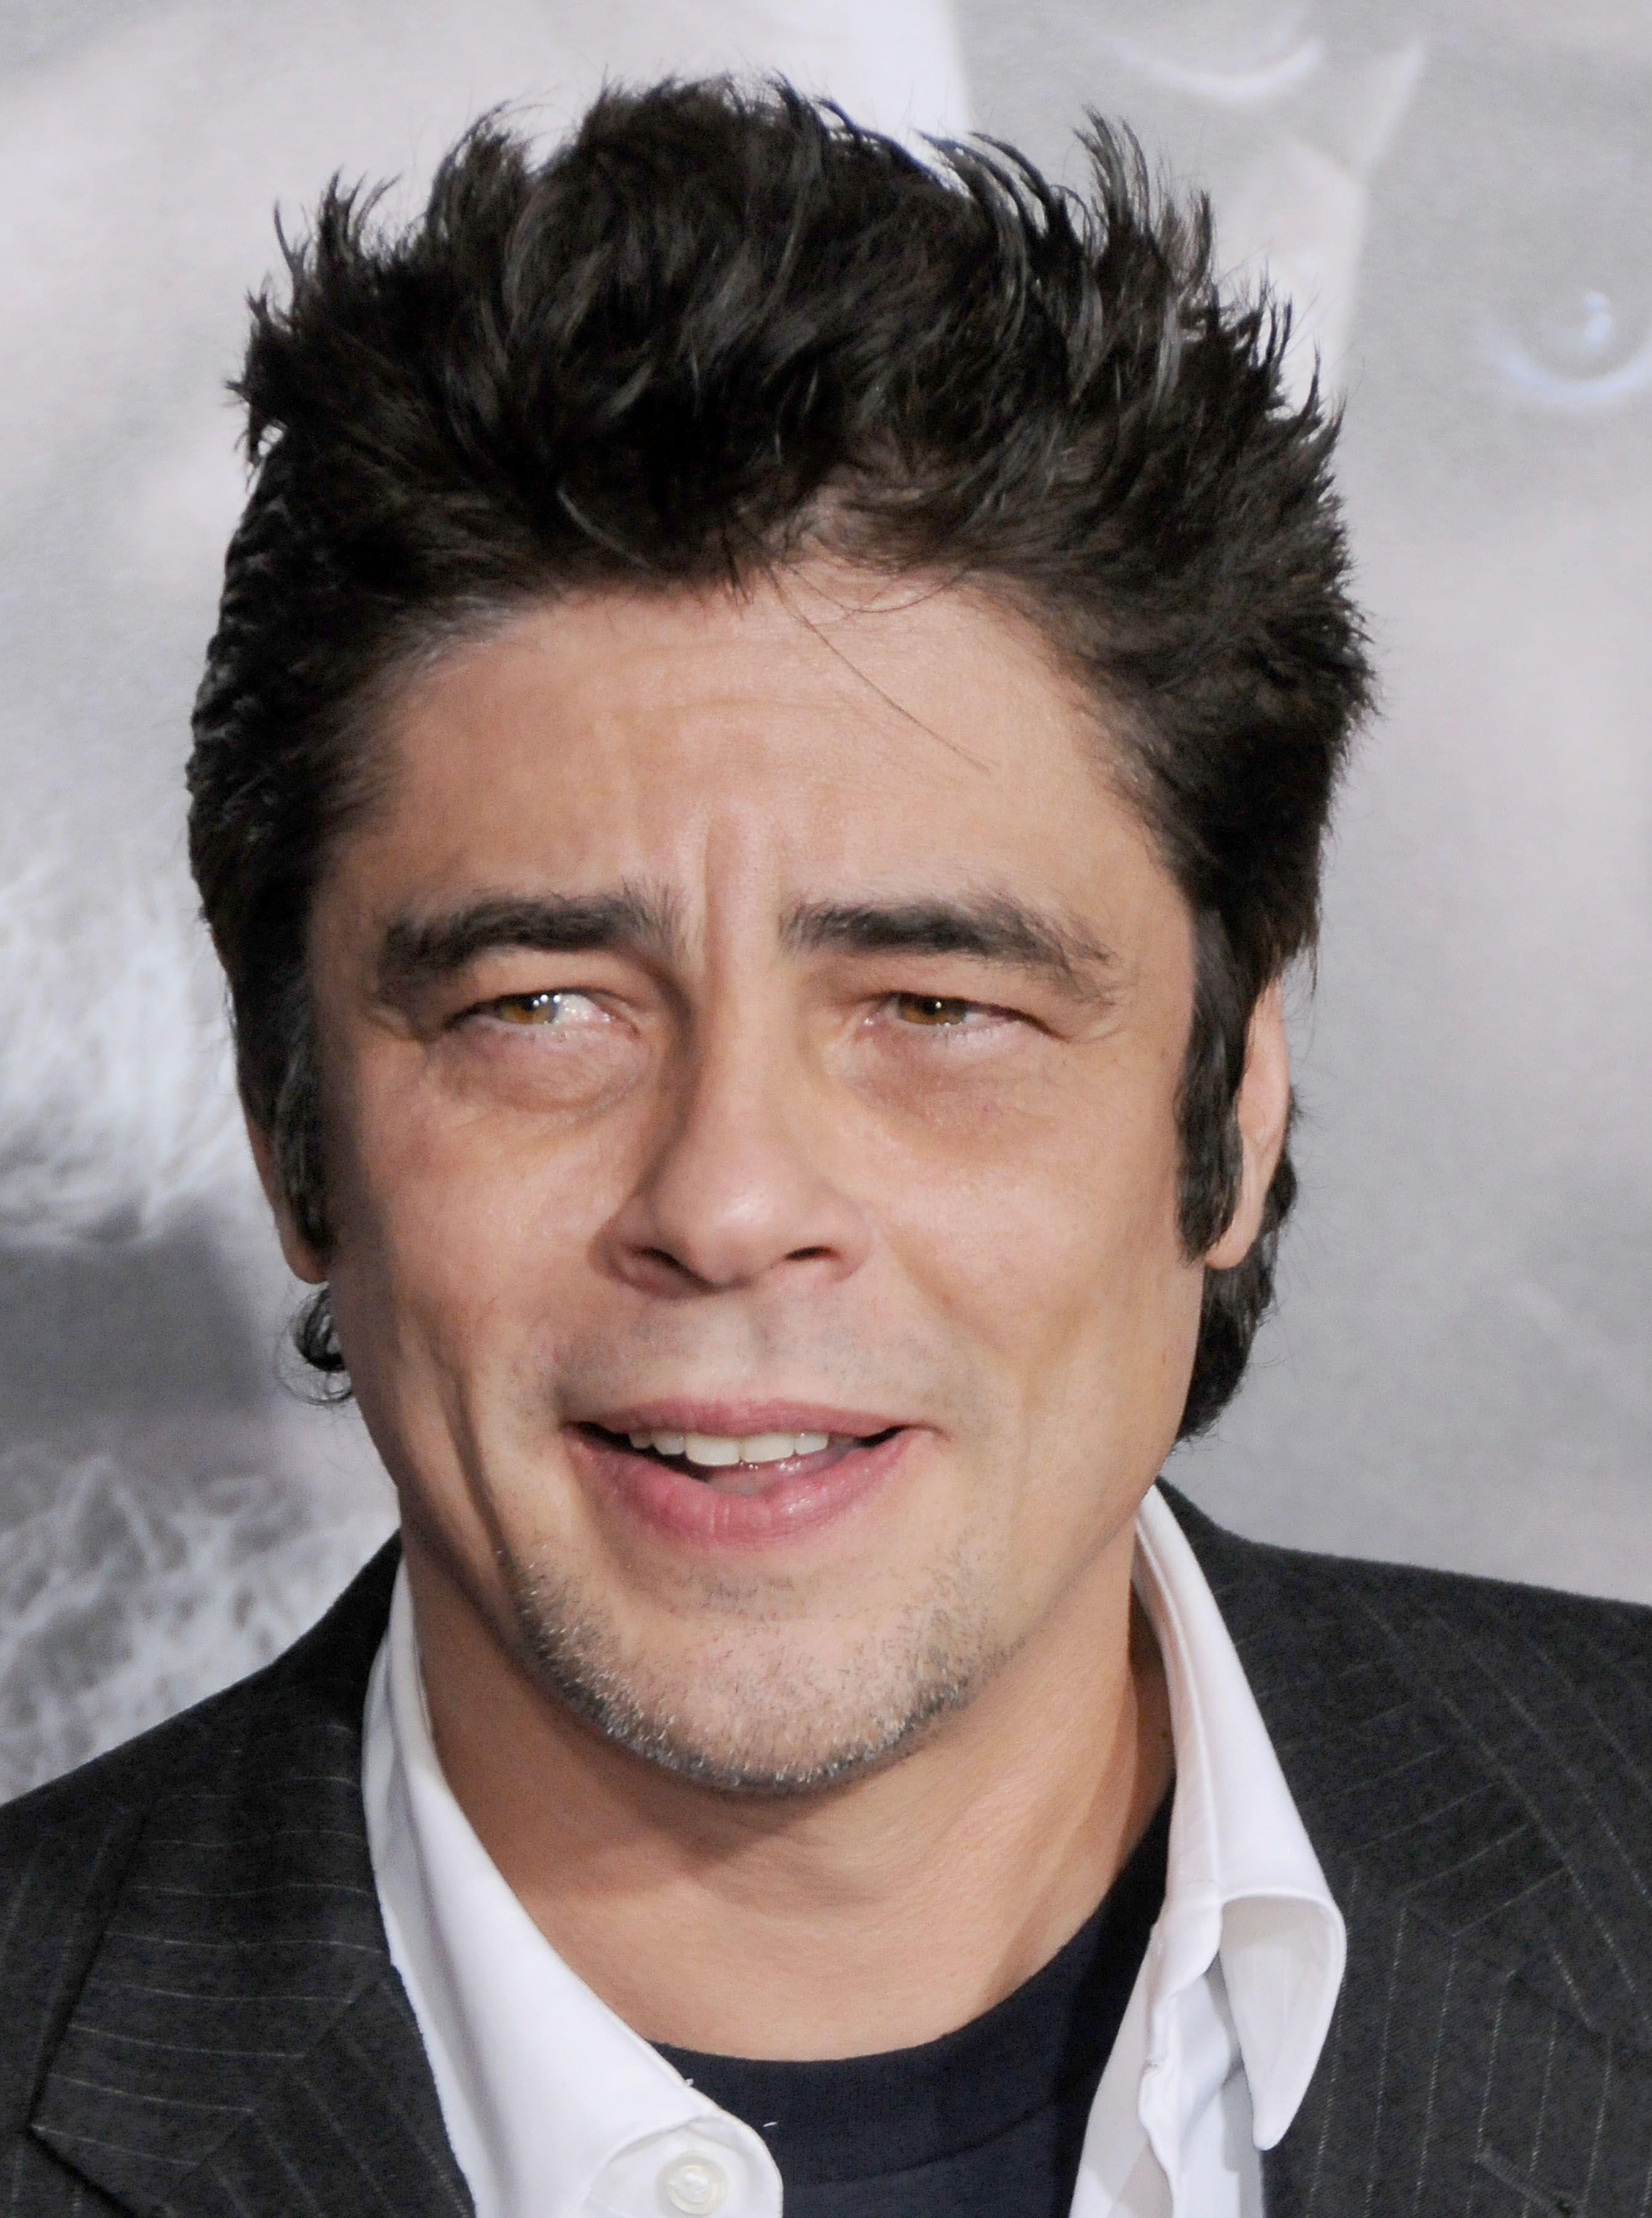 Benicio Del Toro Wallpaper High Quality